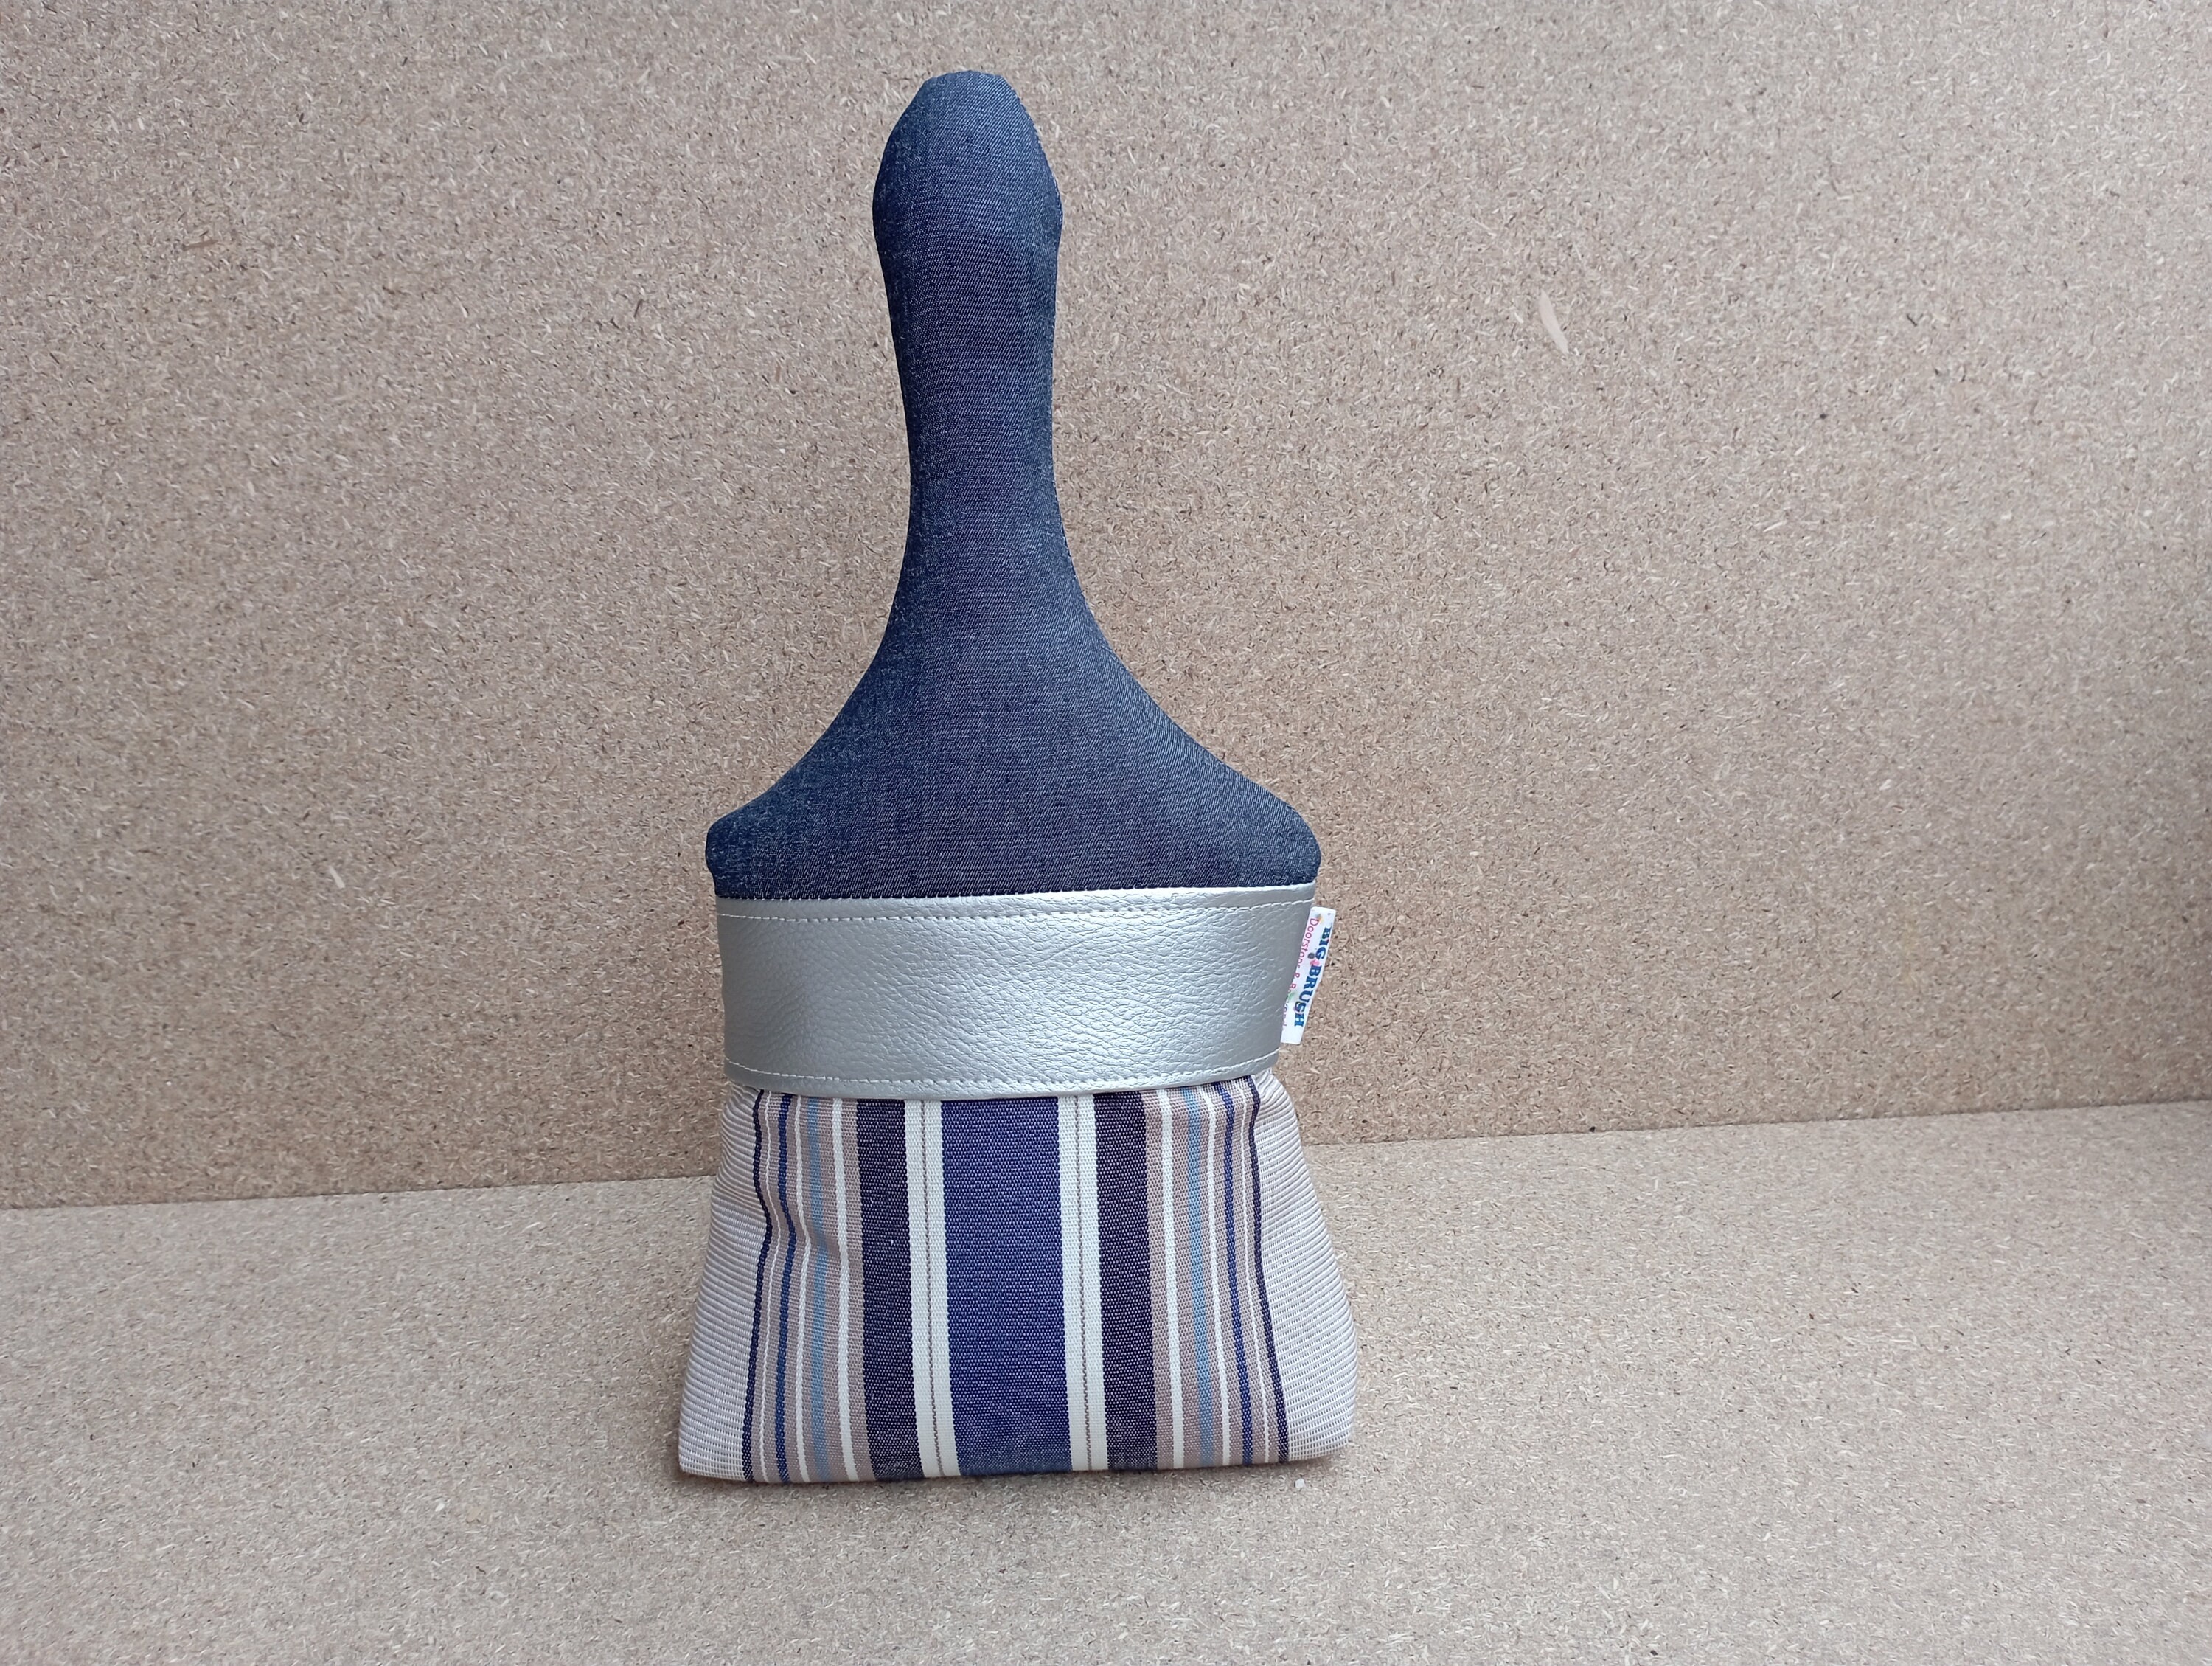 Big Brush Doorstop - Rayures Gris Bleu Pinceau en Tissu Serre-Livre Décoration Intérieure Arrêt de P